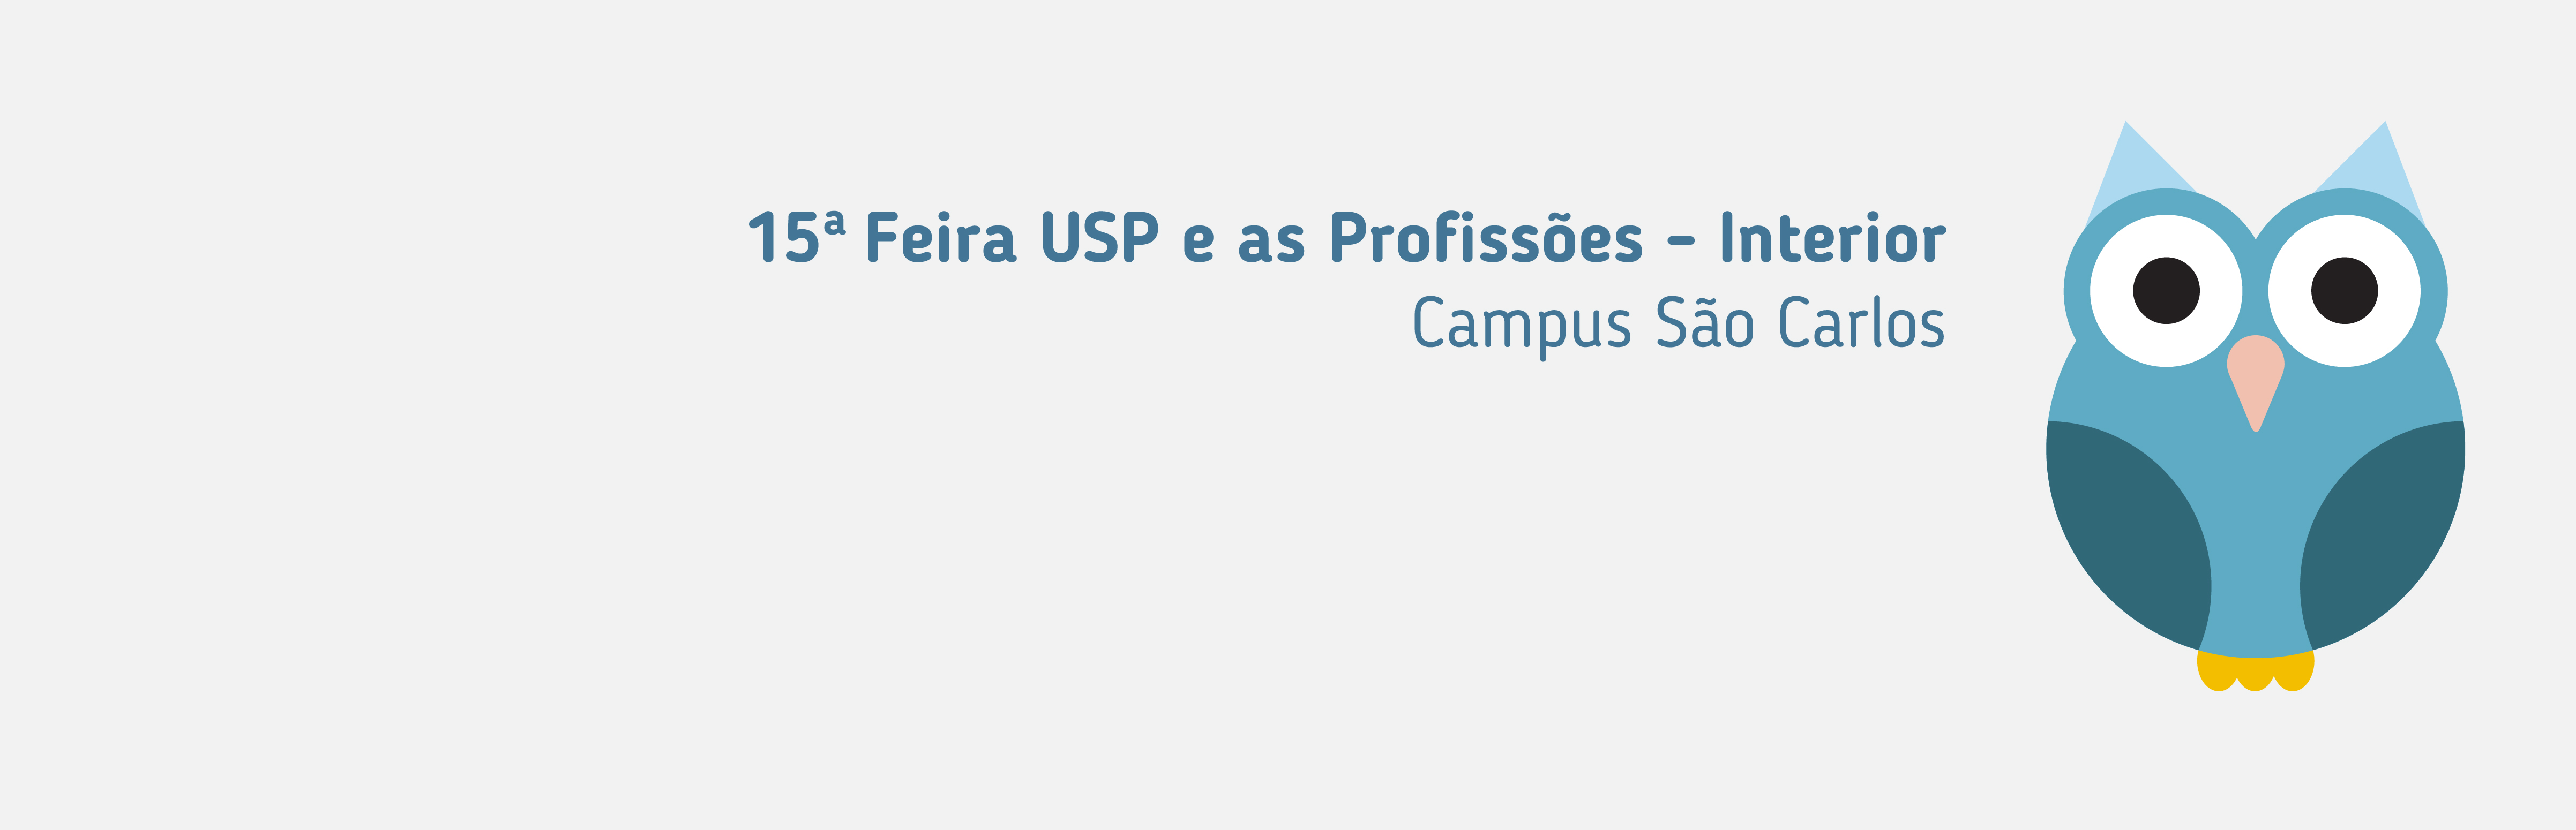 (Português) USP realiza feira de profissões em São Carlos